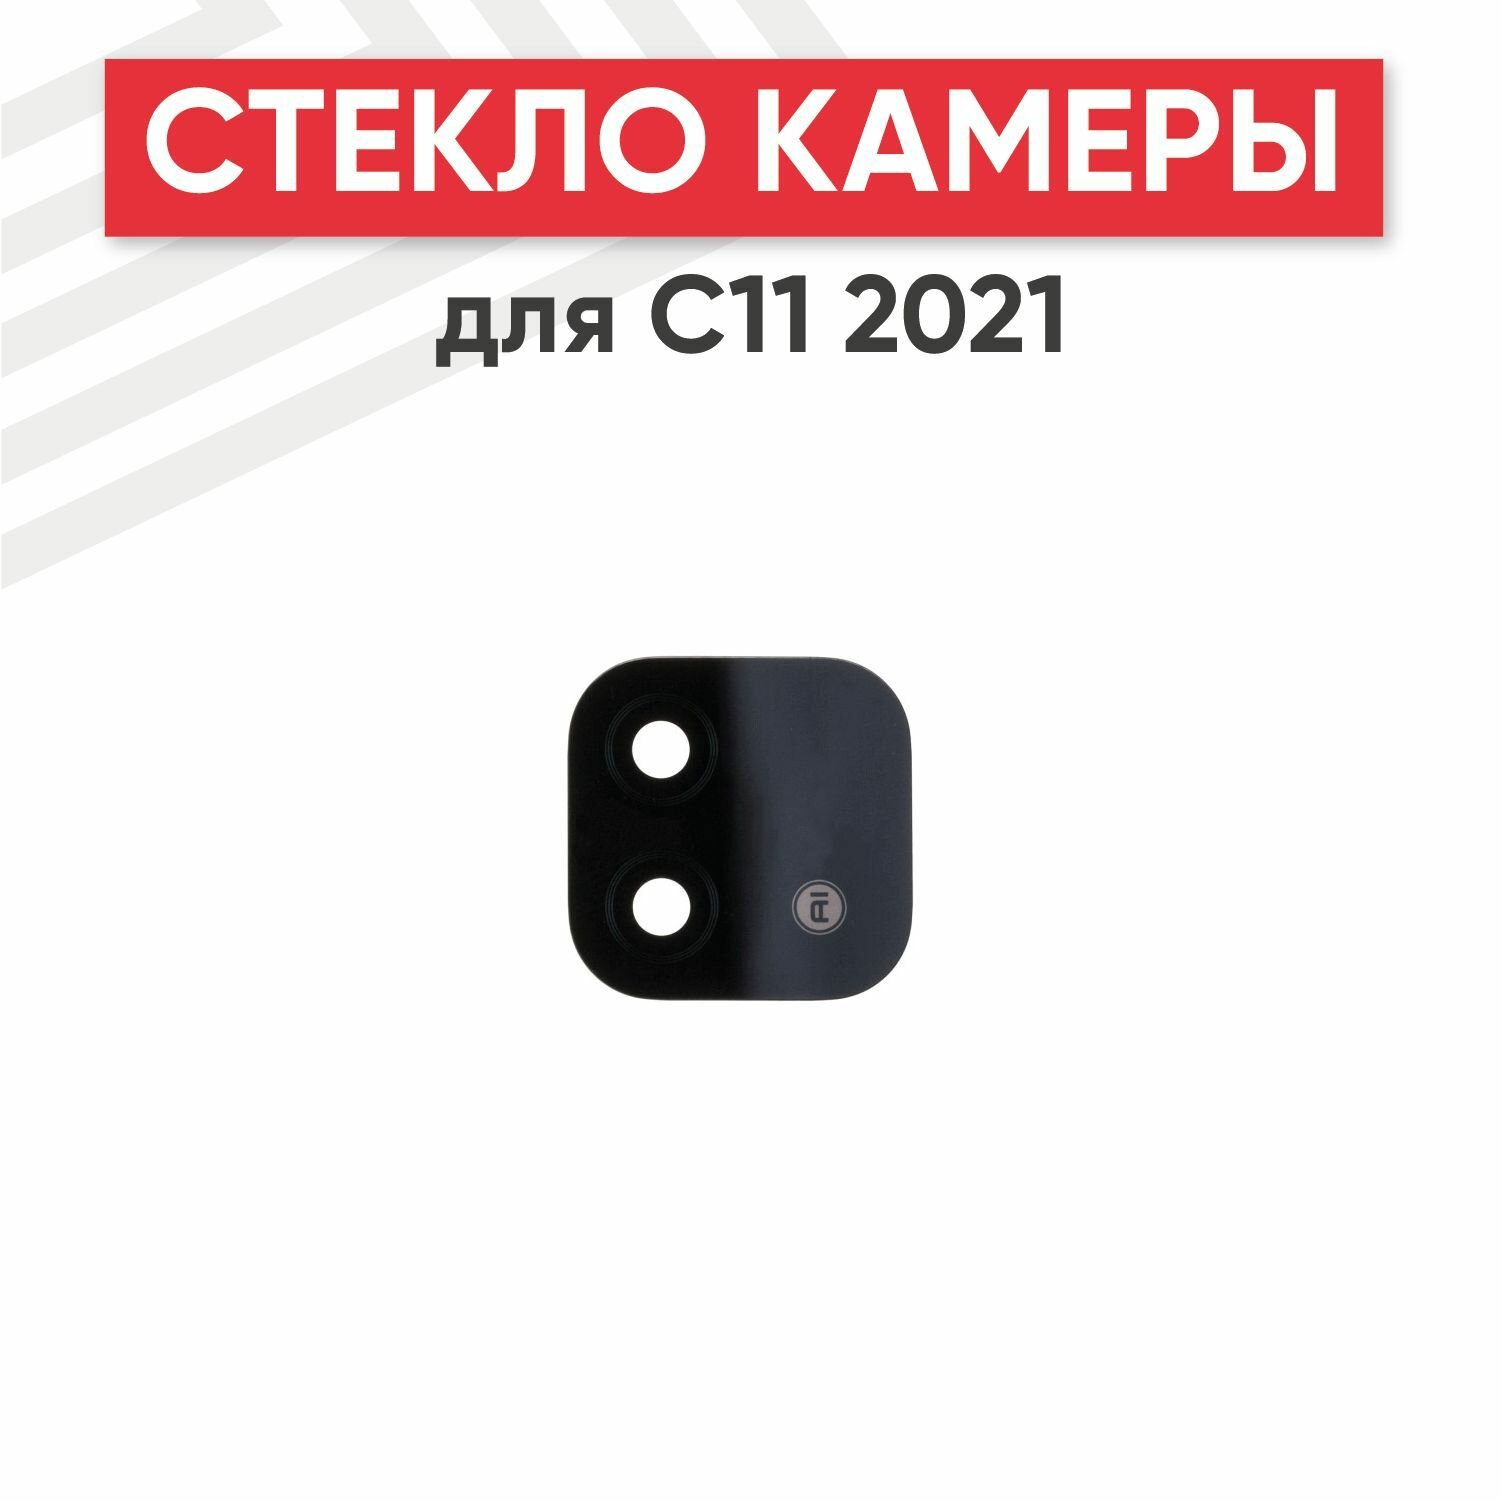 Стекло камеры RageX для C11 2021 (черный)